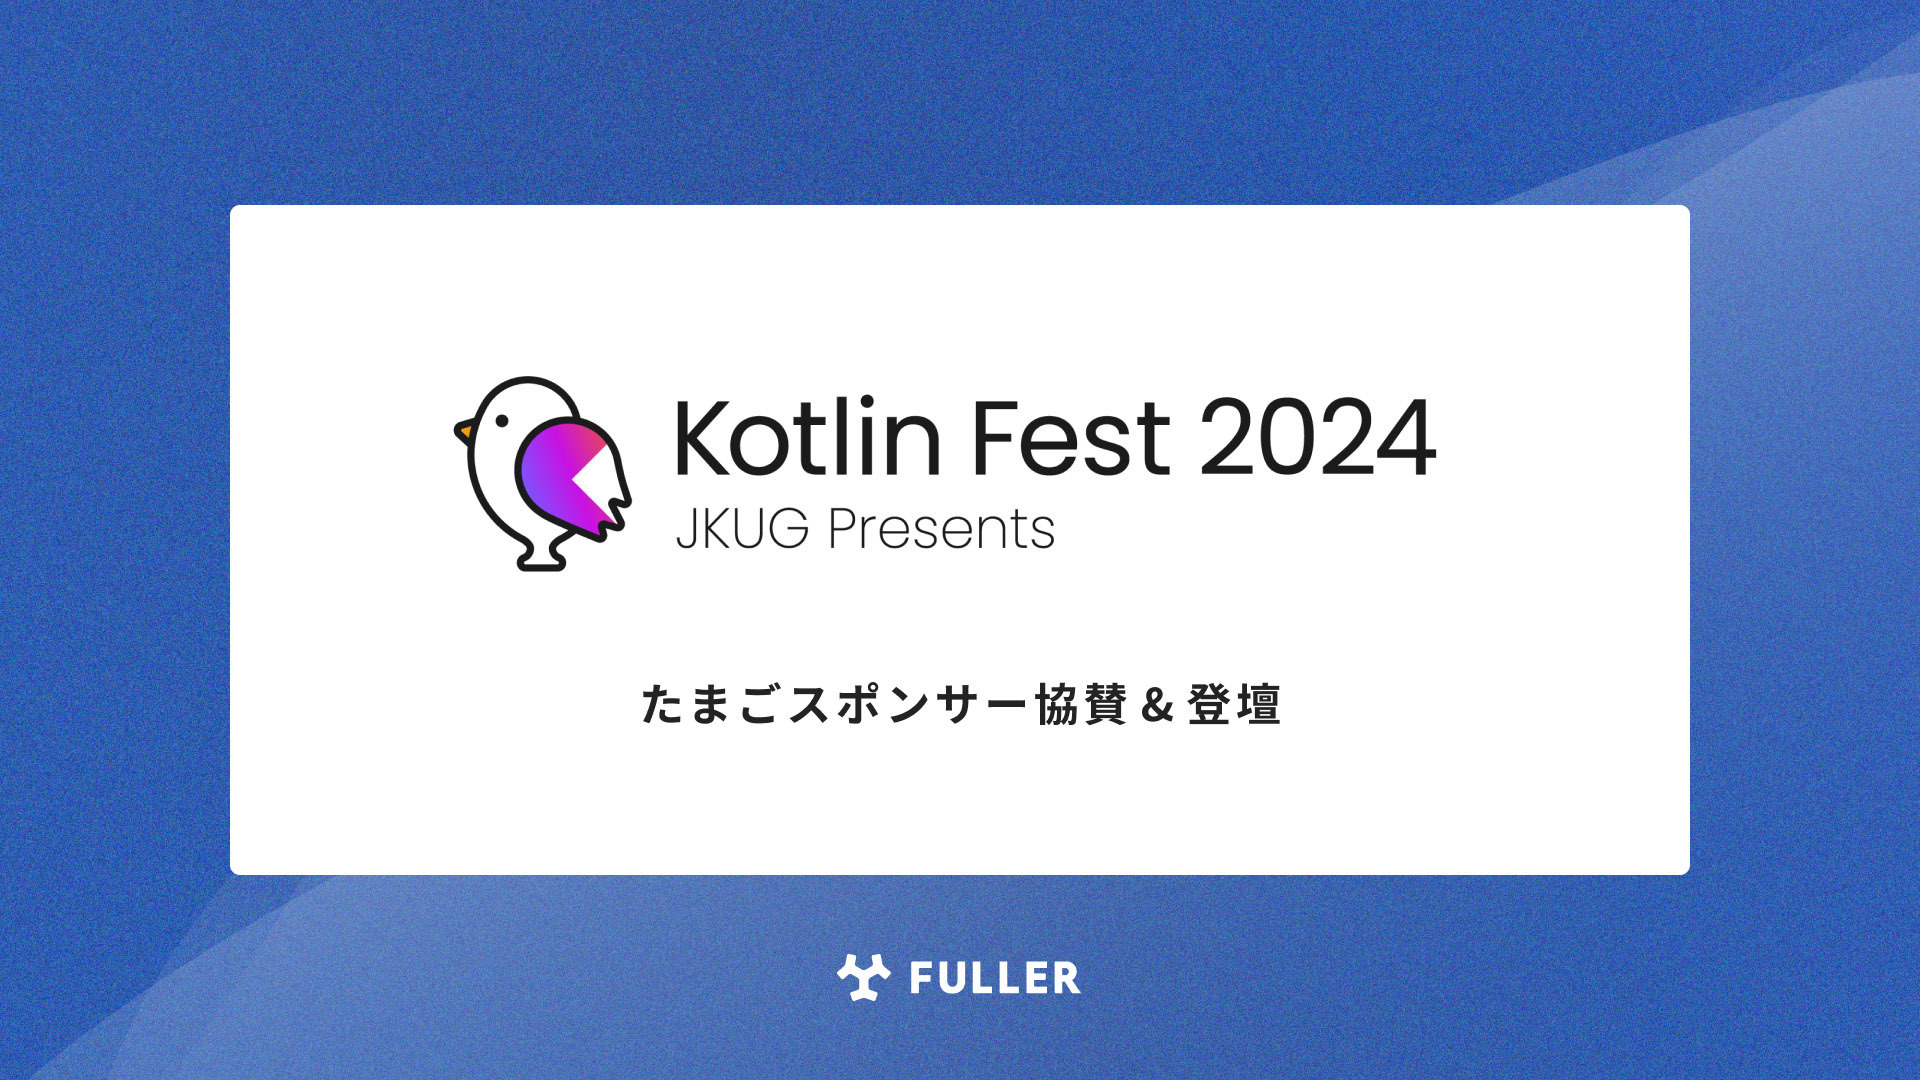 フラー、Kotlin Fest 2024にたまごスポンサー協賛。弊社エンジニアの登壇も決定